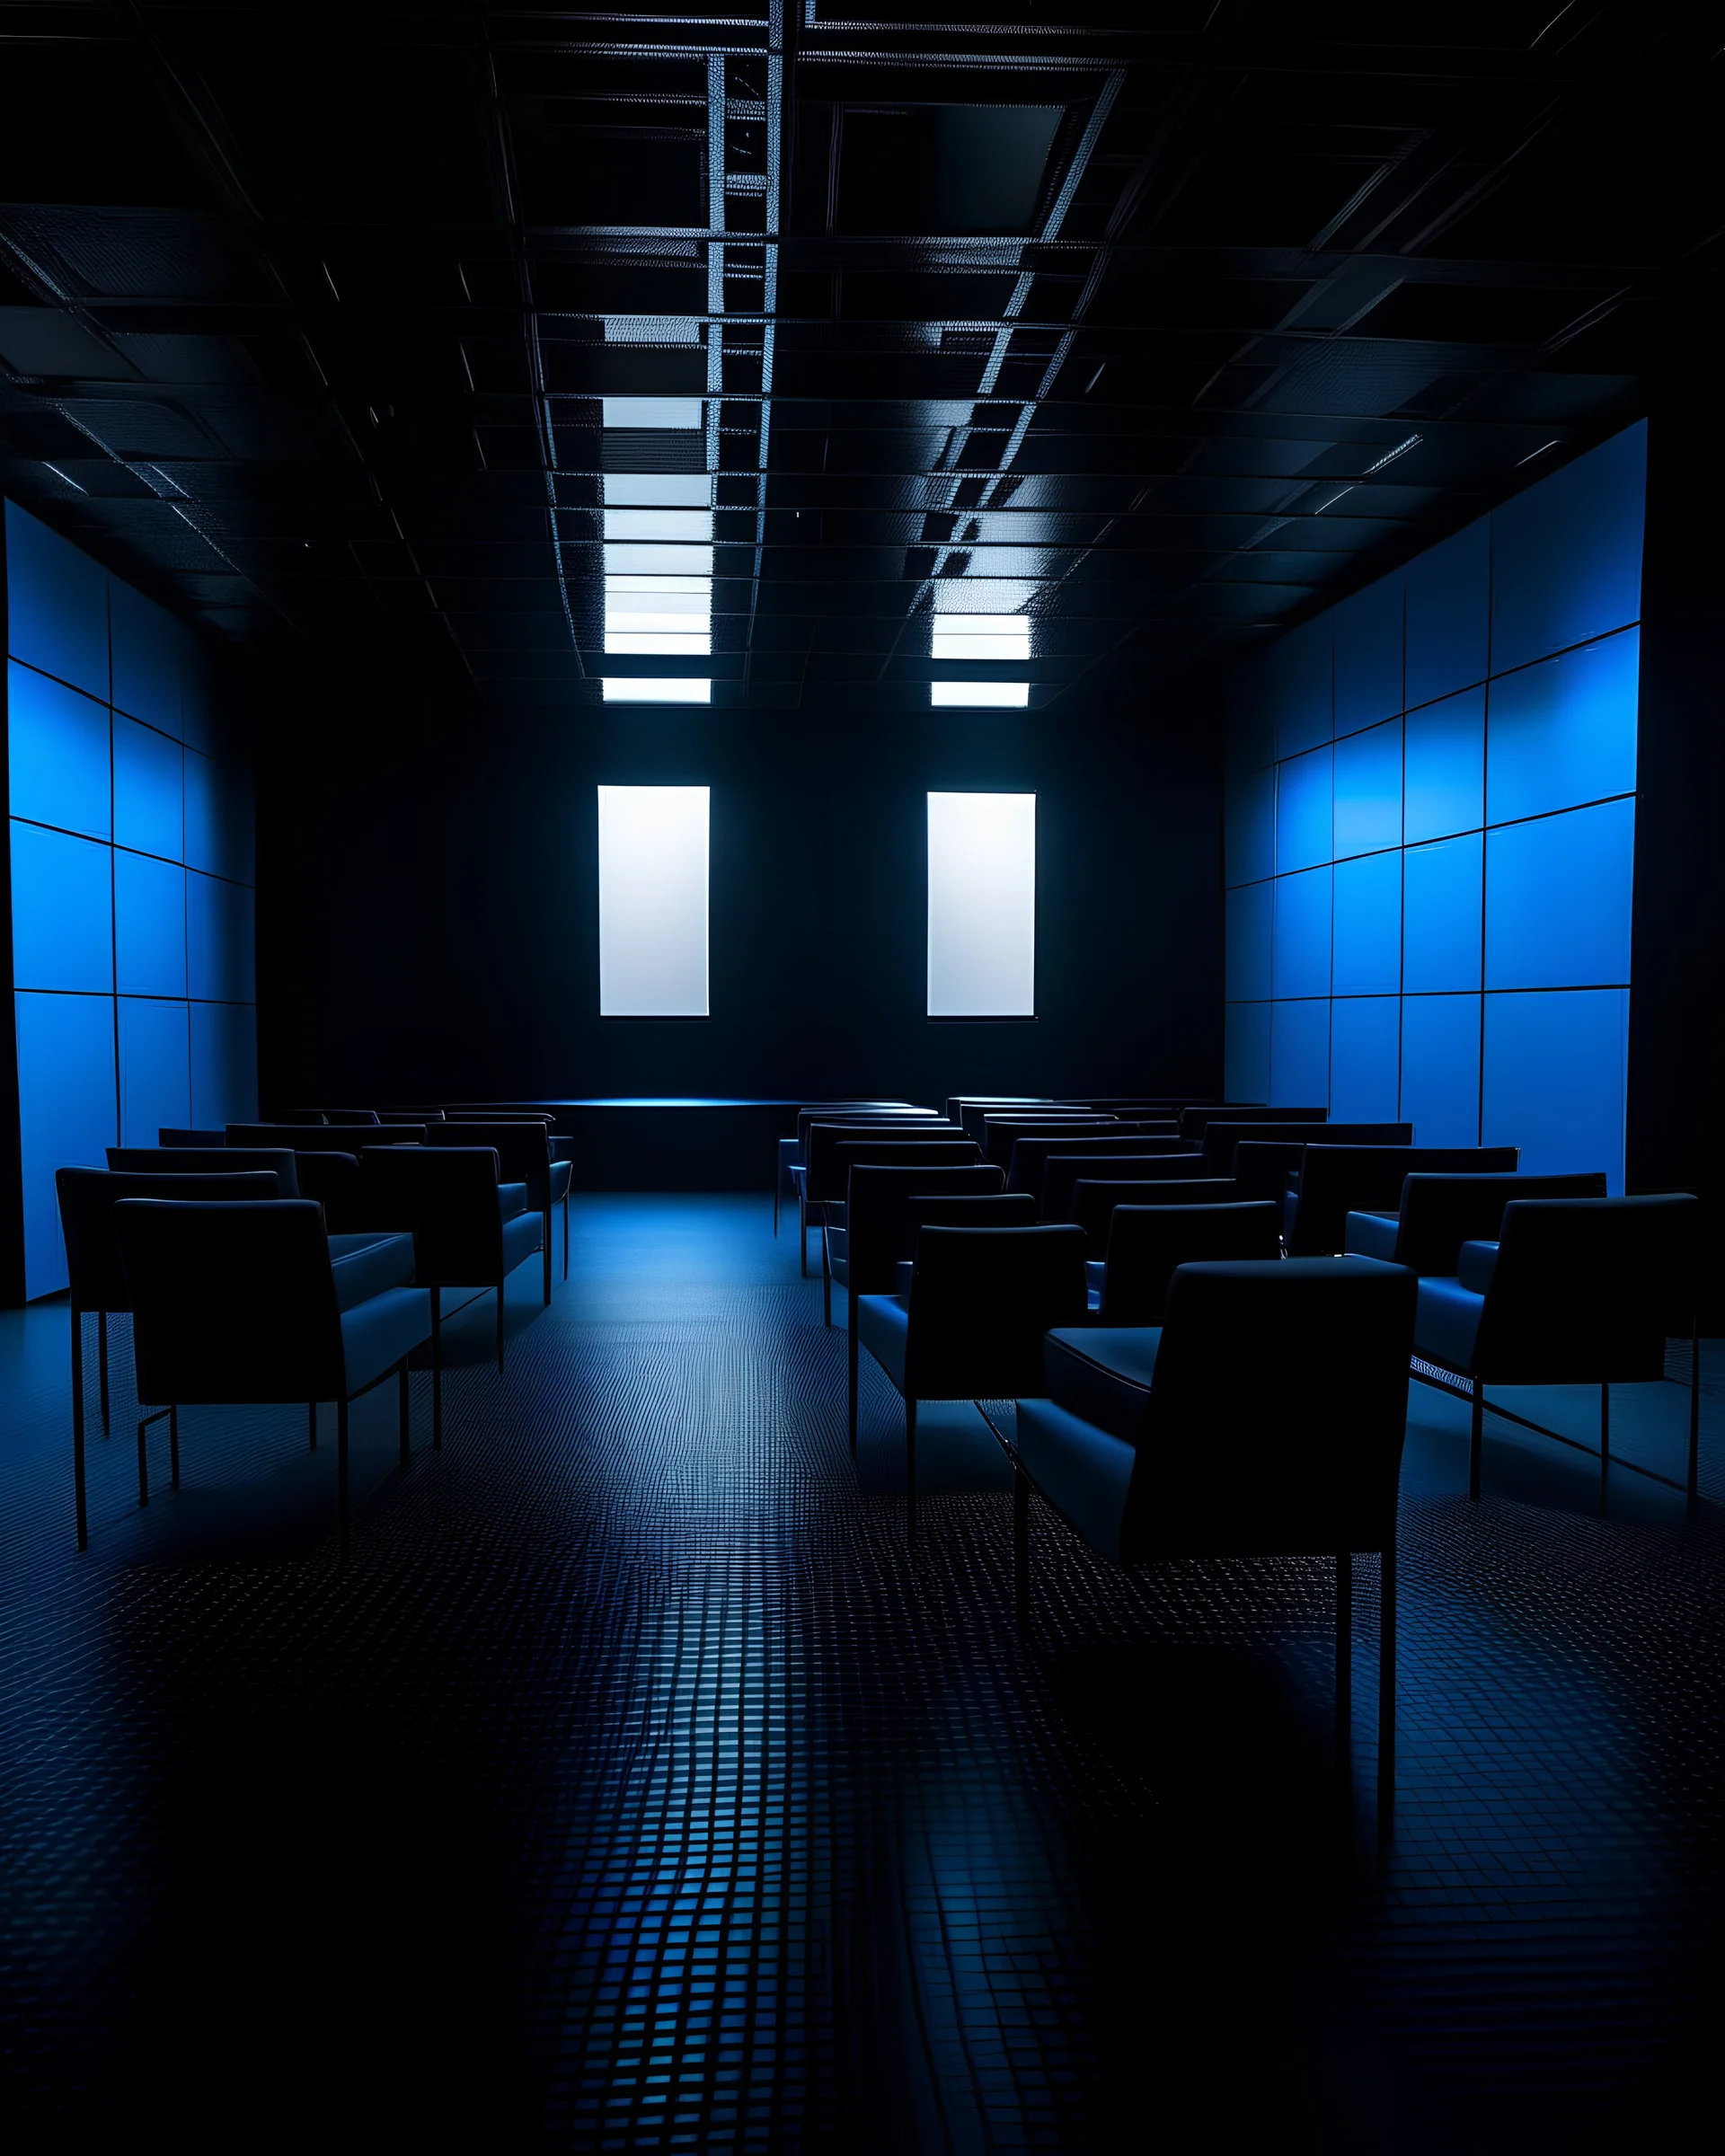 El interior de un cubo cerrado, con paredes de ladrillo negro y suelo de linóleum gris brillante. En el interior hay 42 sillas negras desordenadas por todo el espacio que está inundado de agua azul brillante. En el techo colgados hay focos de teatro que iluminan la escena. El estilo es futurista.